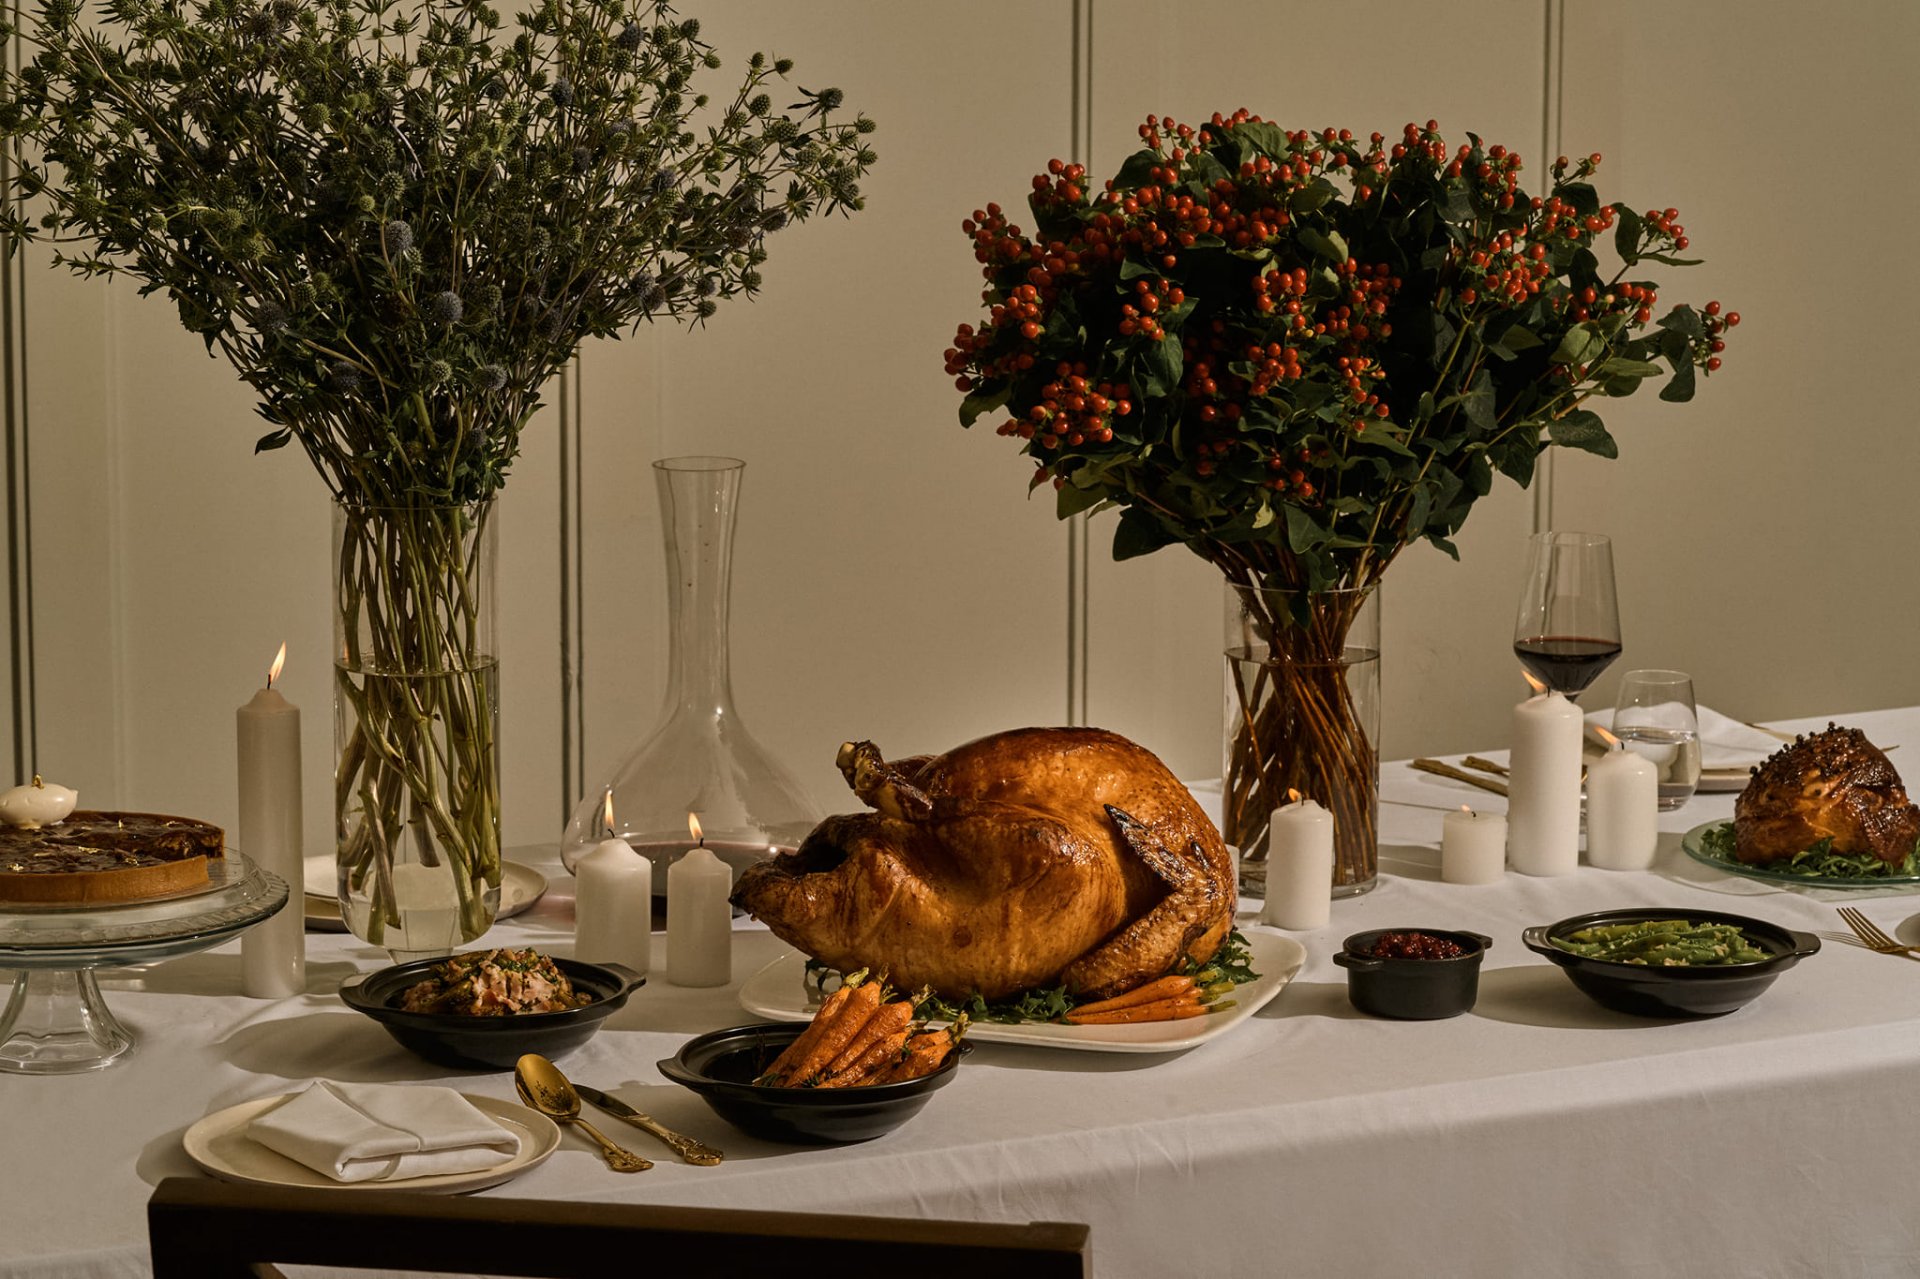 โรงแรมอนันตรา สยาม กรุงเทพฯ ต้อนรับเทศกาล "วันขอบคุณพระเจ้า"  เปิดพรีออเดอร์ “Thanksgiving Boxes Set”